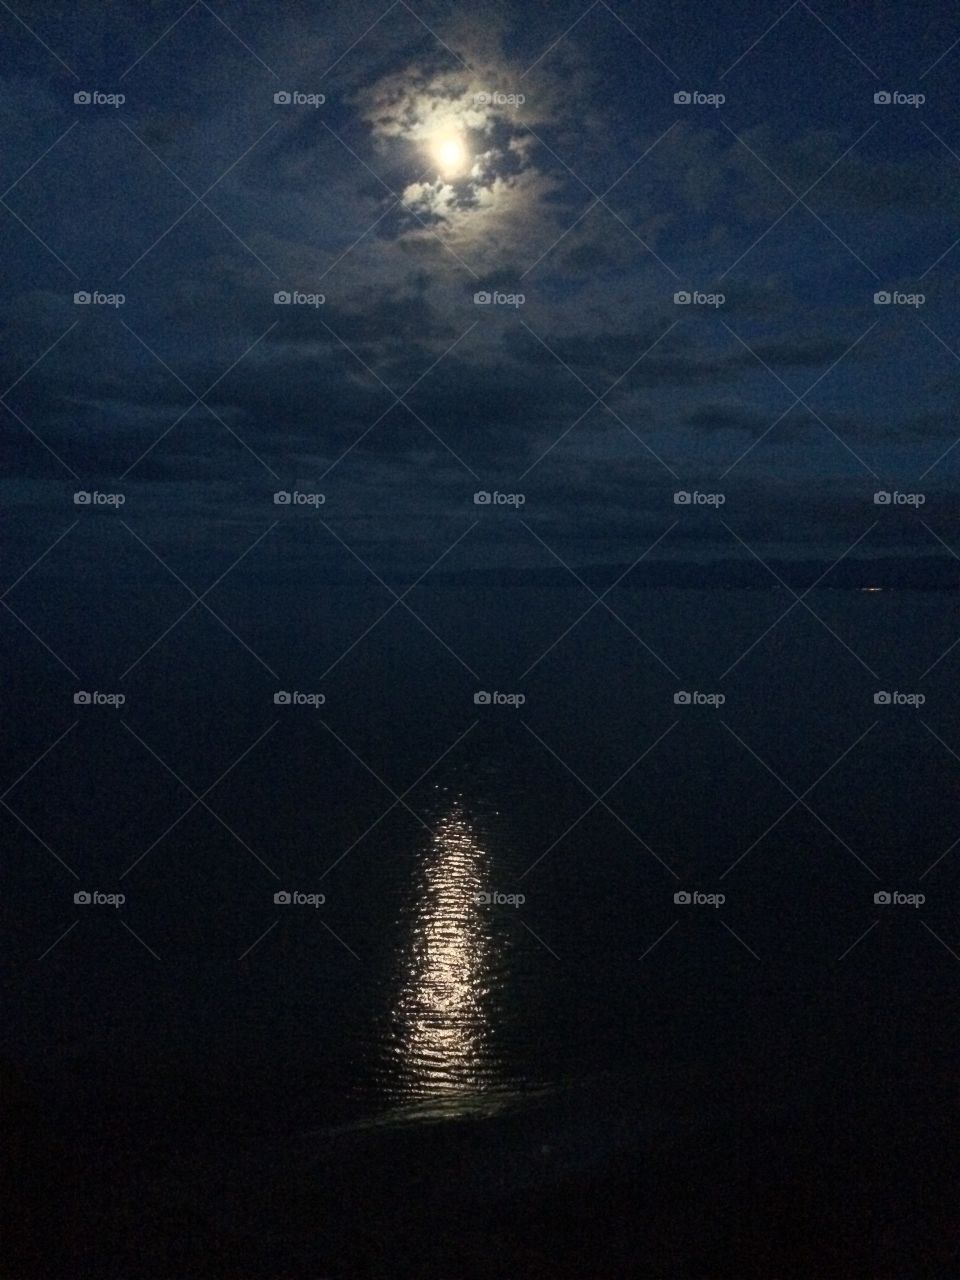 Moonlight over the Ocean